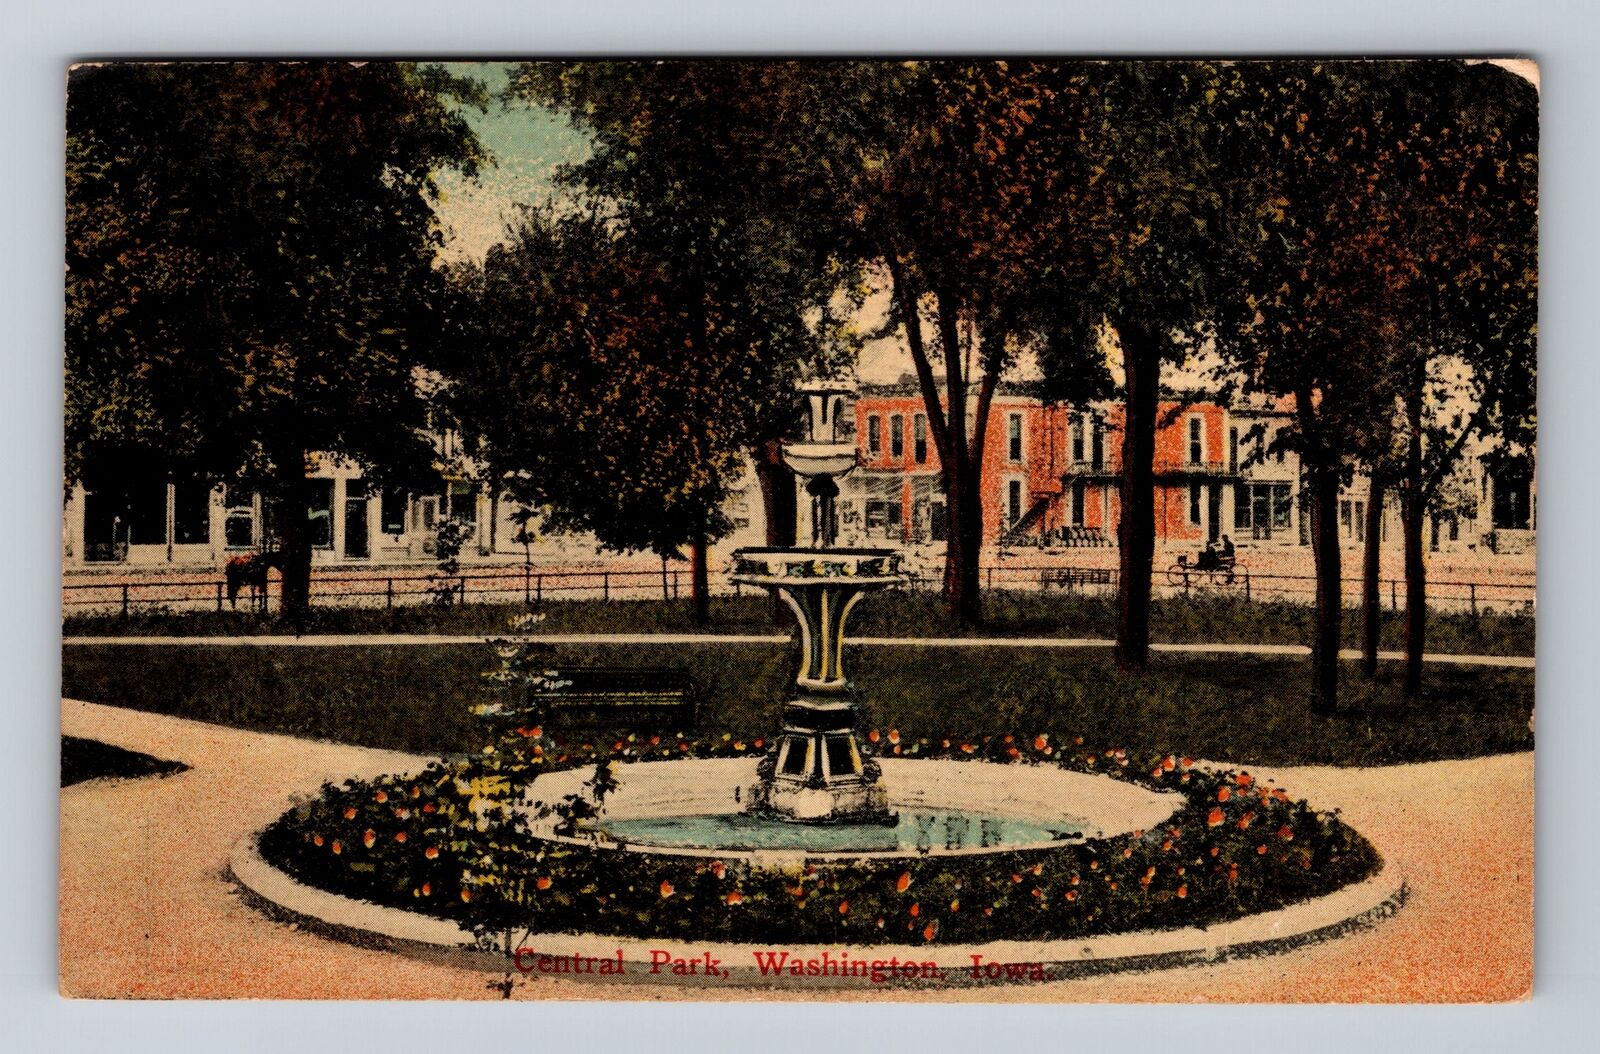 Washington IA-Iowa, Central Park, Antique, Vintage c1914 Postcard